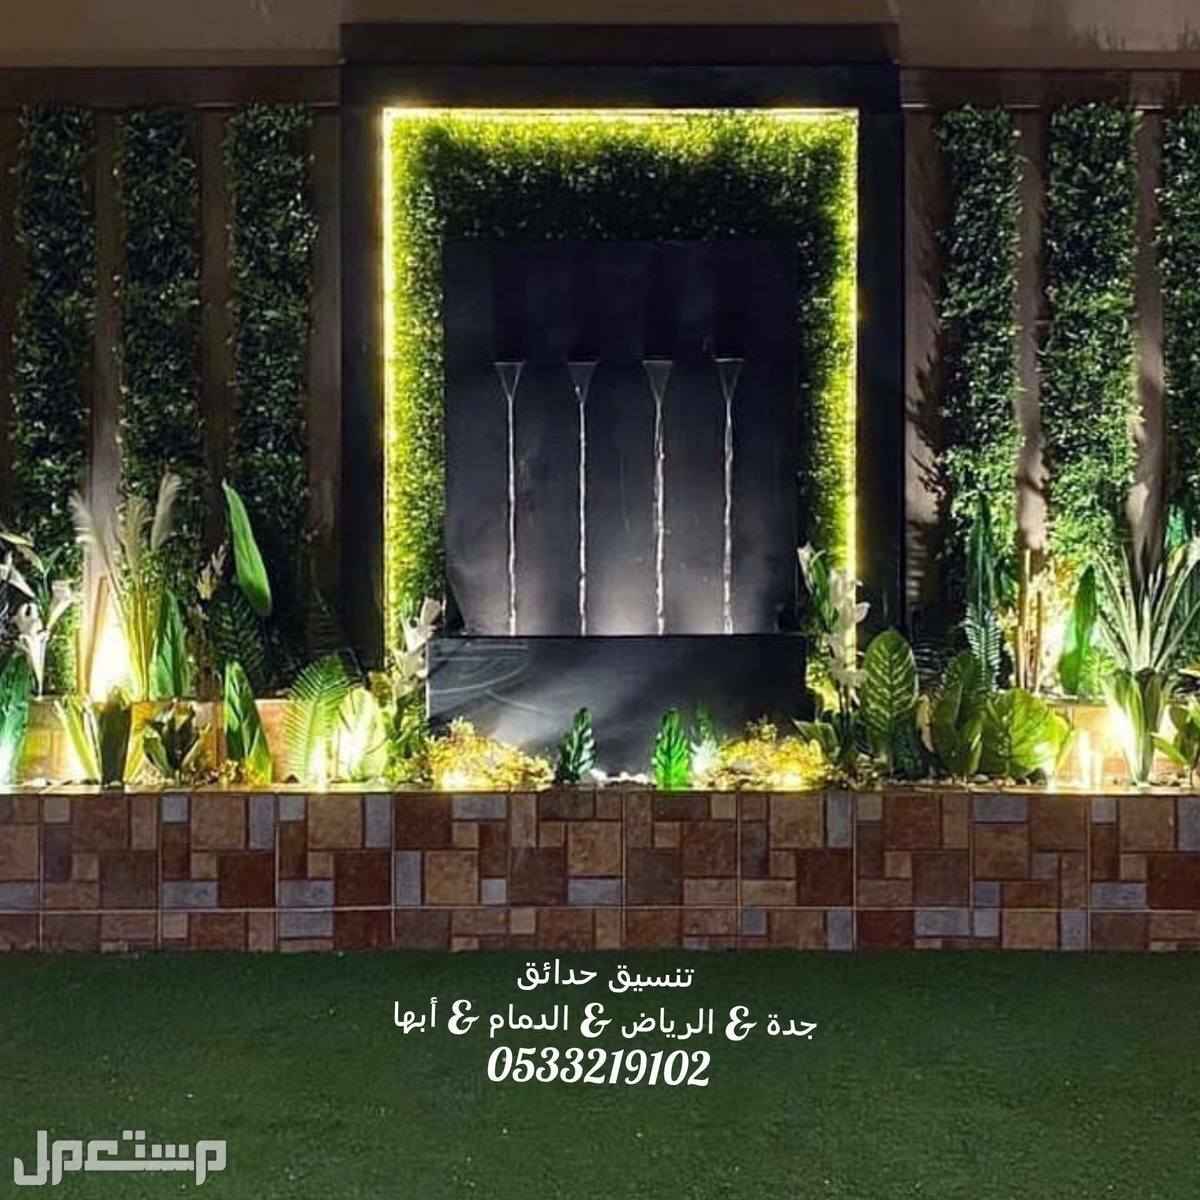 تزين جدار بالعشب تصميم شلال حديقة تنسيق حدائق السعودية تركيب مظلات جدة عمل حدائق العشب الصناعى